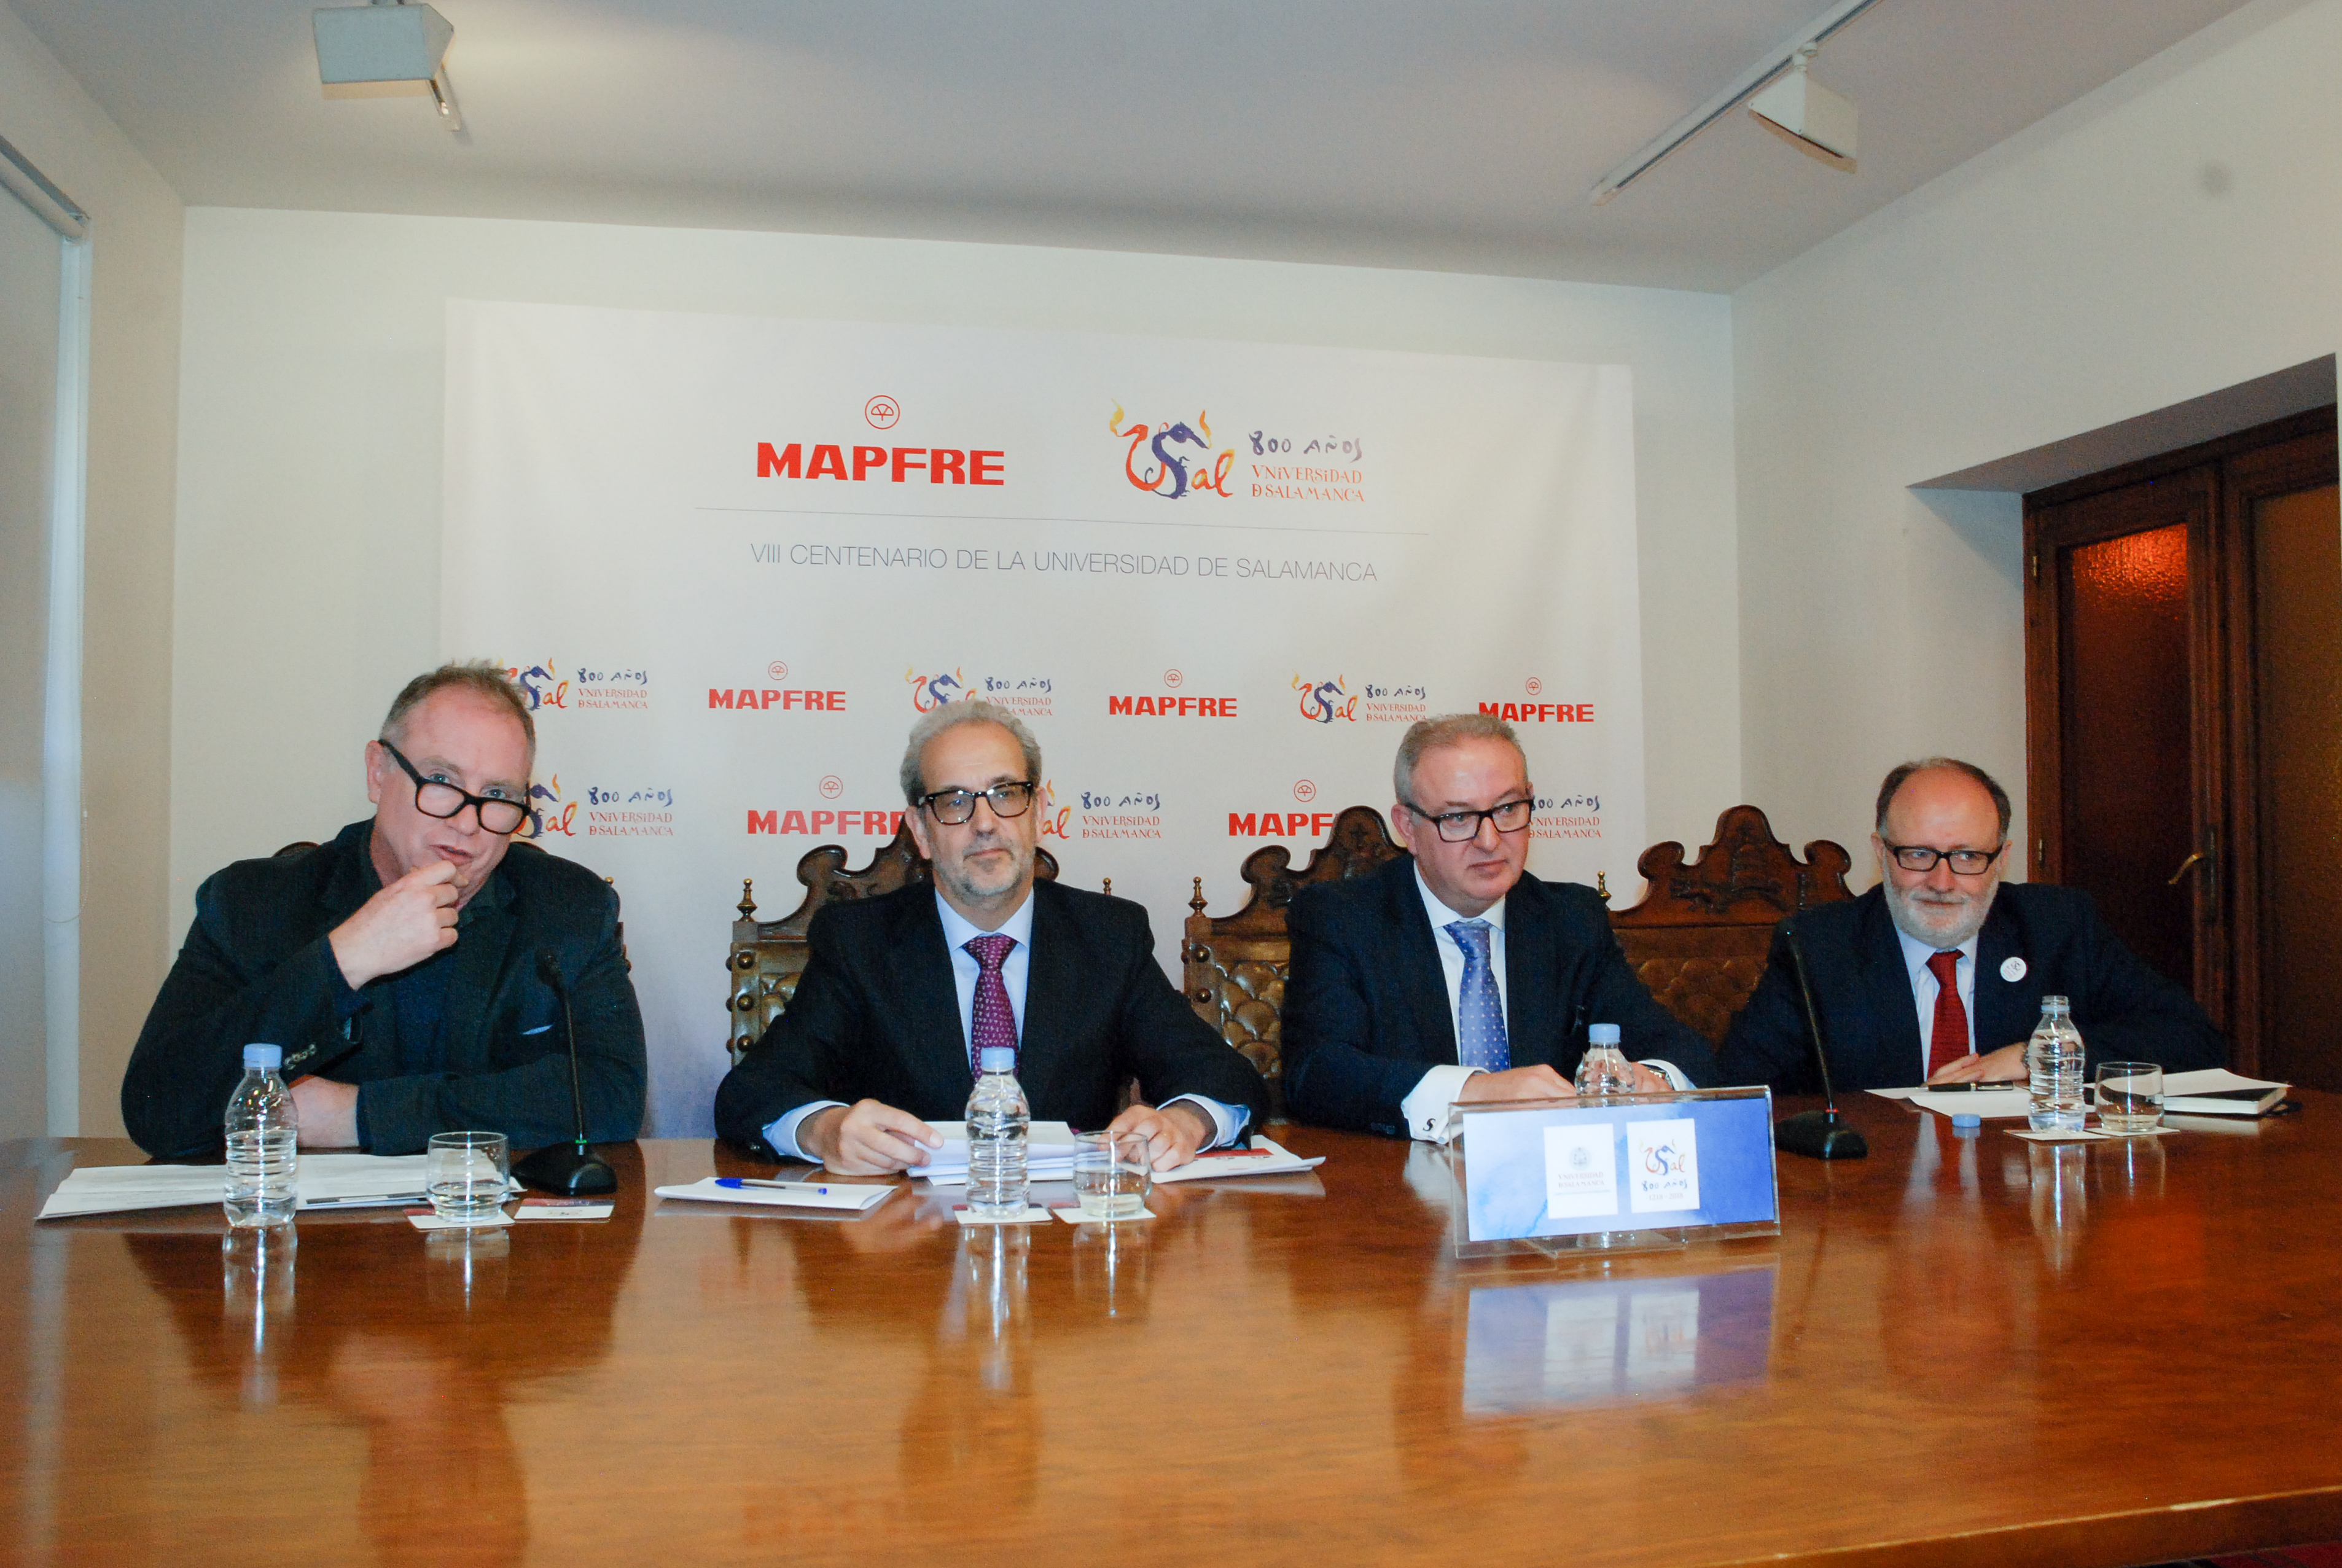 MAPFRE apoya la conmemoración del VIII Centenario de la Universidad de Salamanca con el patrocinio de la exposición de Miquel Barceló